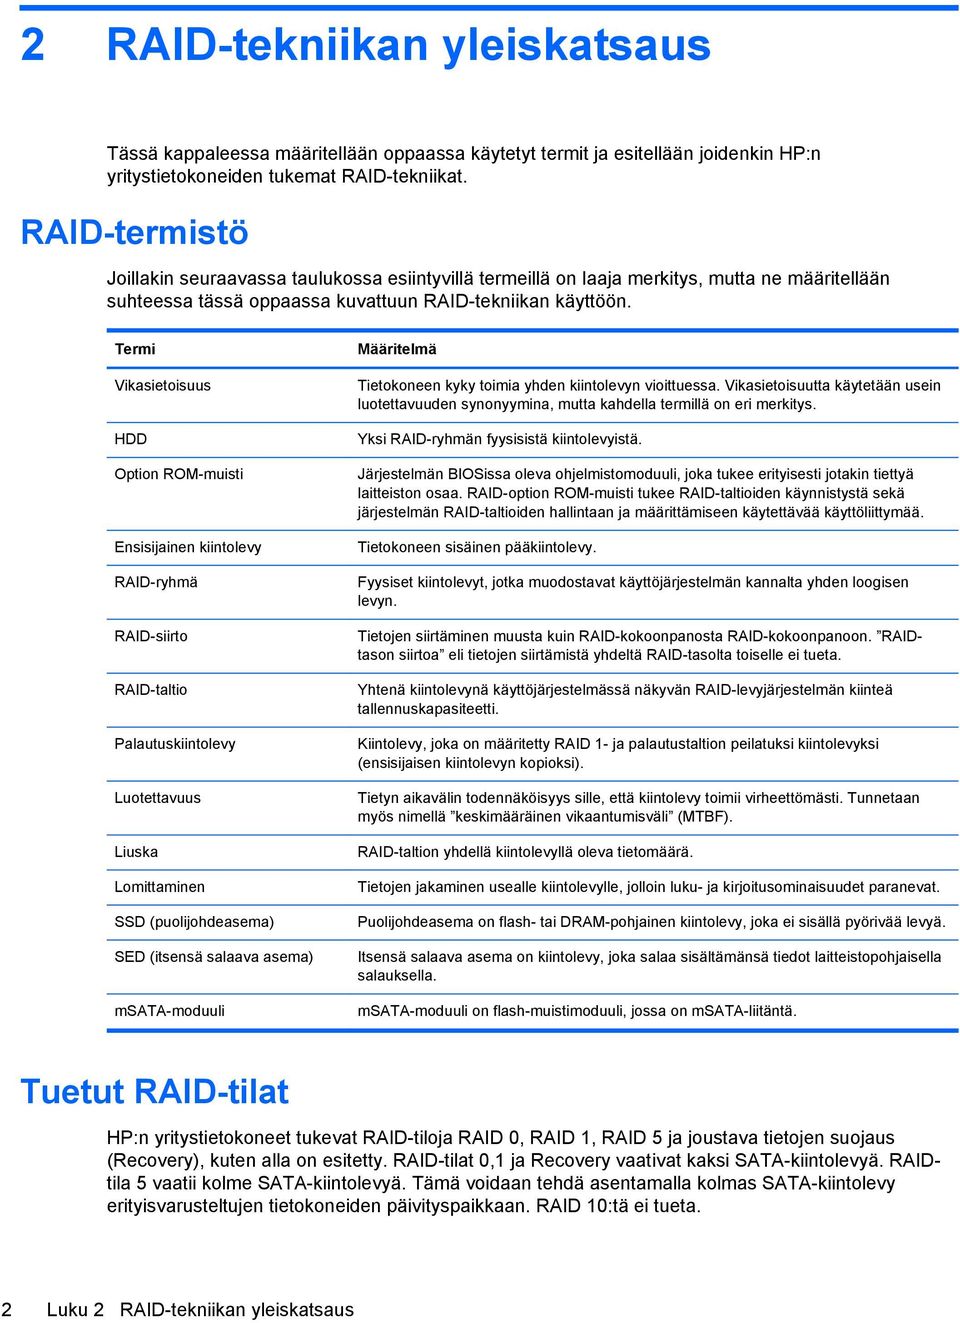 Termi Vikasietoisuus HDD Option ROM-muisti Ensisijainen kiintolevy RAID-ryhmä RAID-siirto RAID-taltio Palautuskiintolevy Luotettavuus Liuska Lomittaminen SSD (puolijohdeasema) SED (itsensä salaava